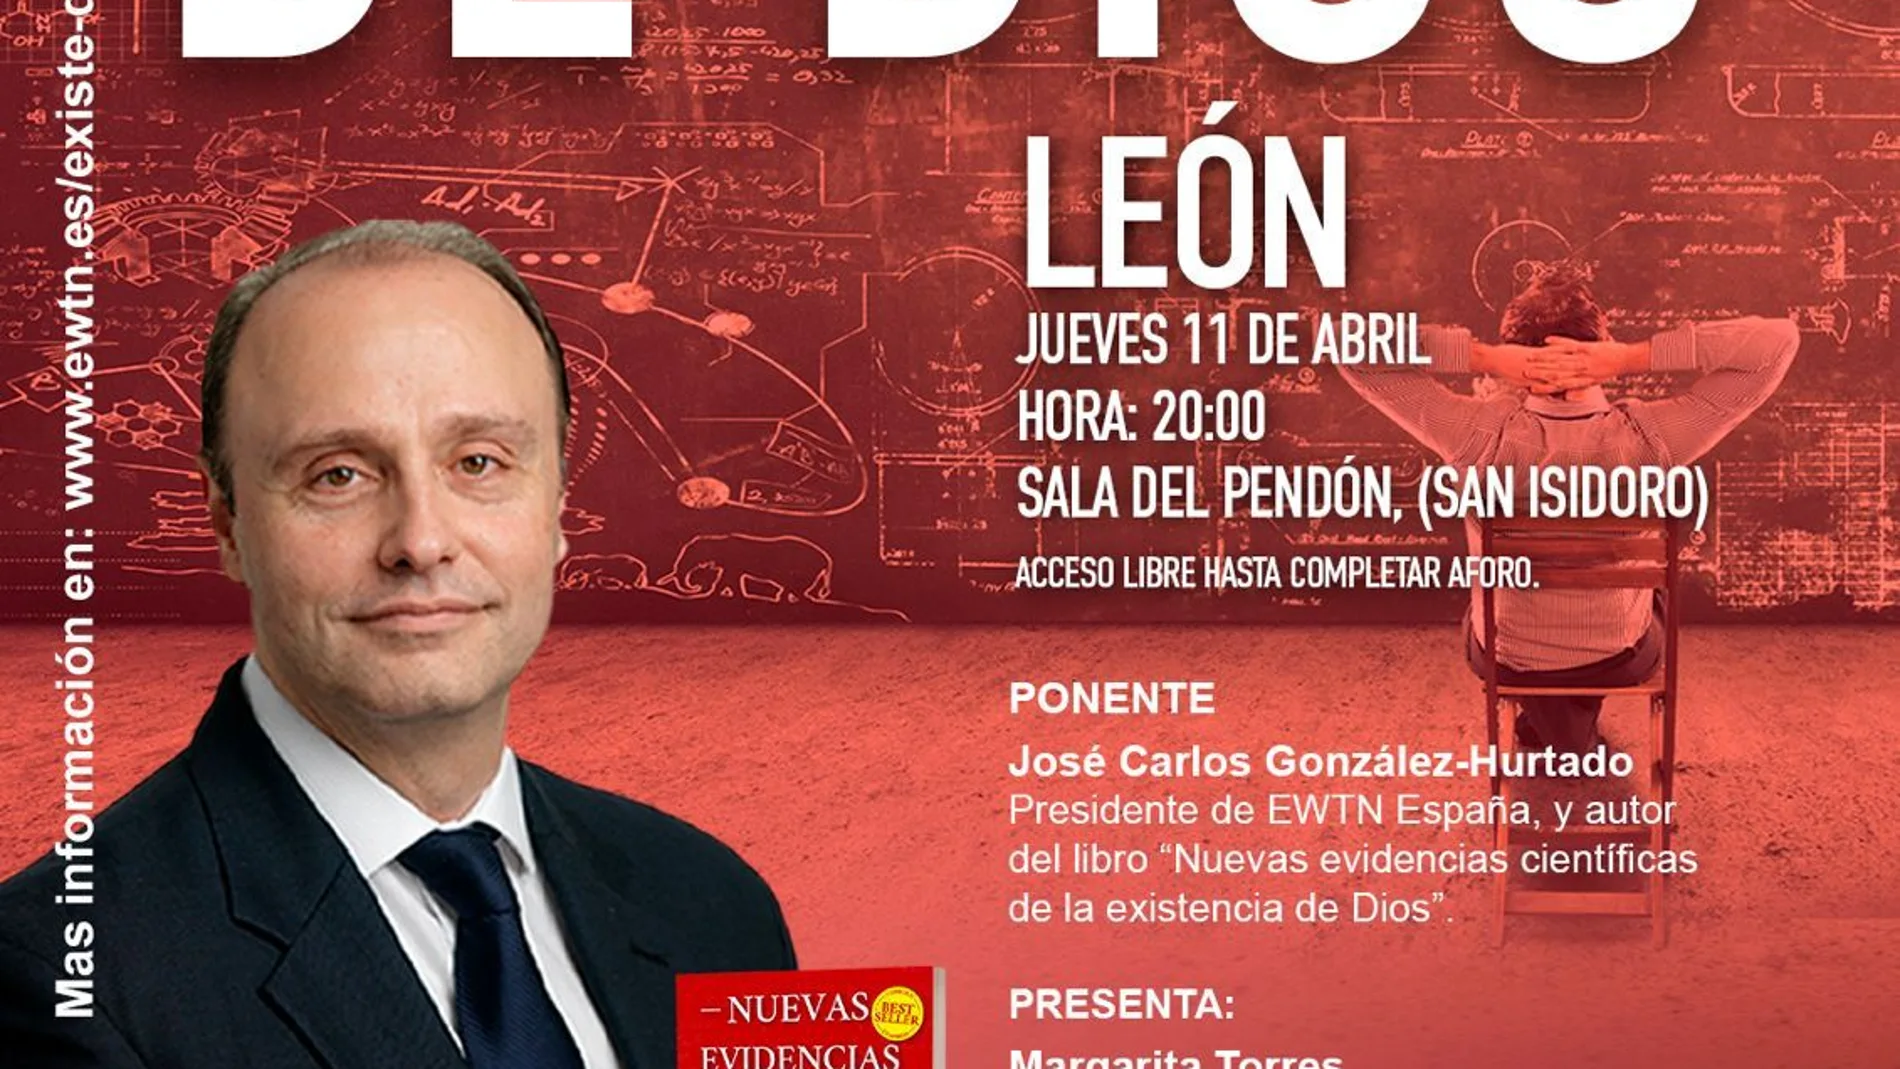 El presidente de EWTN-España estará en León invitado por el colegio Peñacorada